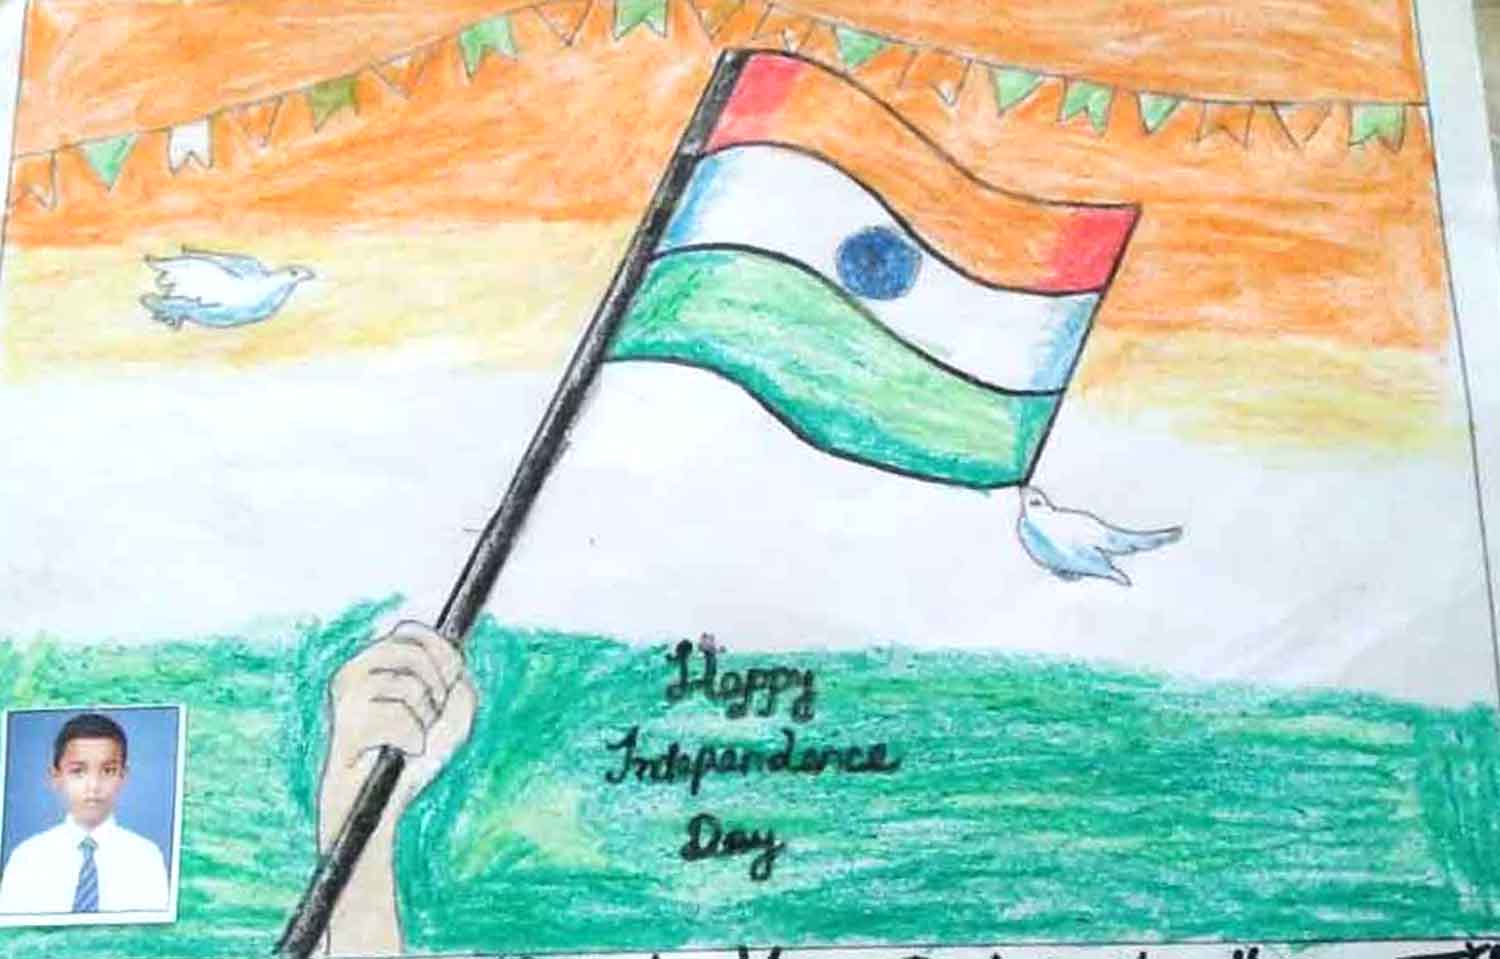 जौनपुर। स्वतंत्रता दिवस के अवसर पर सेंट जॉन्स स्कूल सिद्दीकपुर के कक्षा पांच के छात्र शौर्य प्रताप चौधरी एवं वीर प्रताप चौधरी ने चित्रकारी के माध्यम से देशभक्ति दिखायी। बच्चे ने इस ड्राइंग में राष्ट्रीय ध्वज व देश के महापुरूषों की तस्वीर बनायी है।